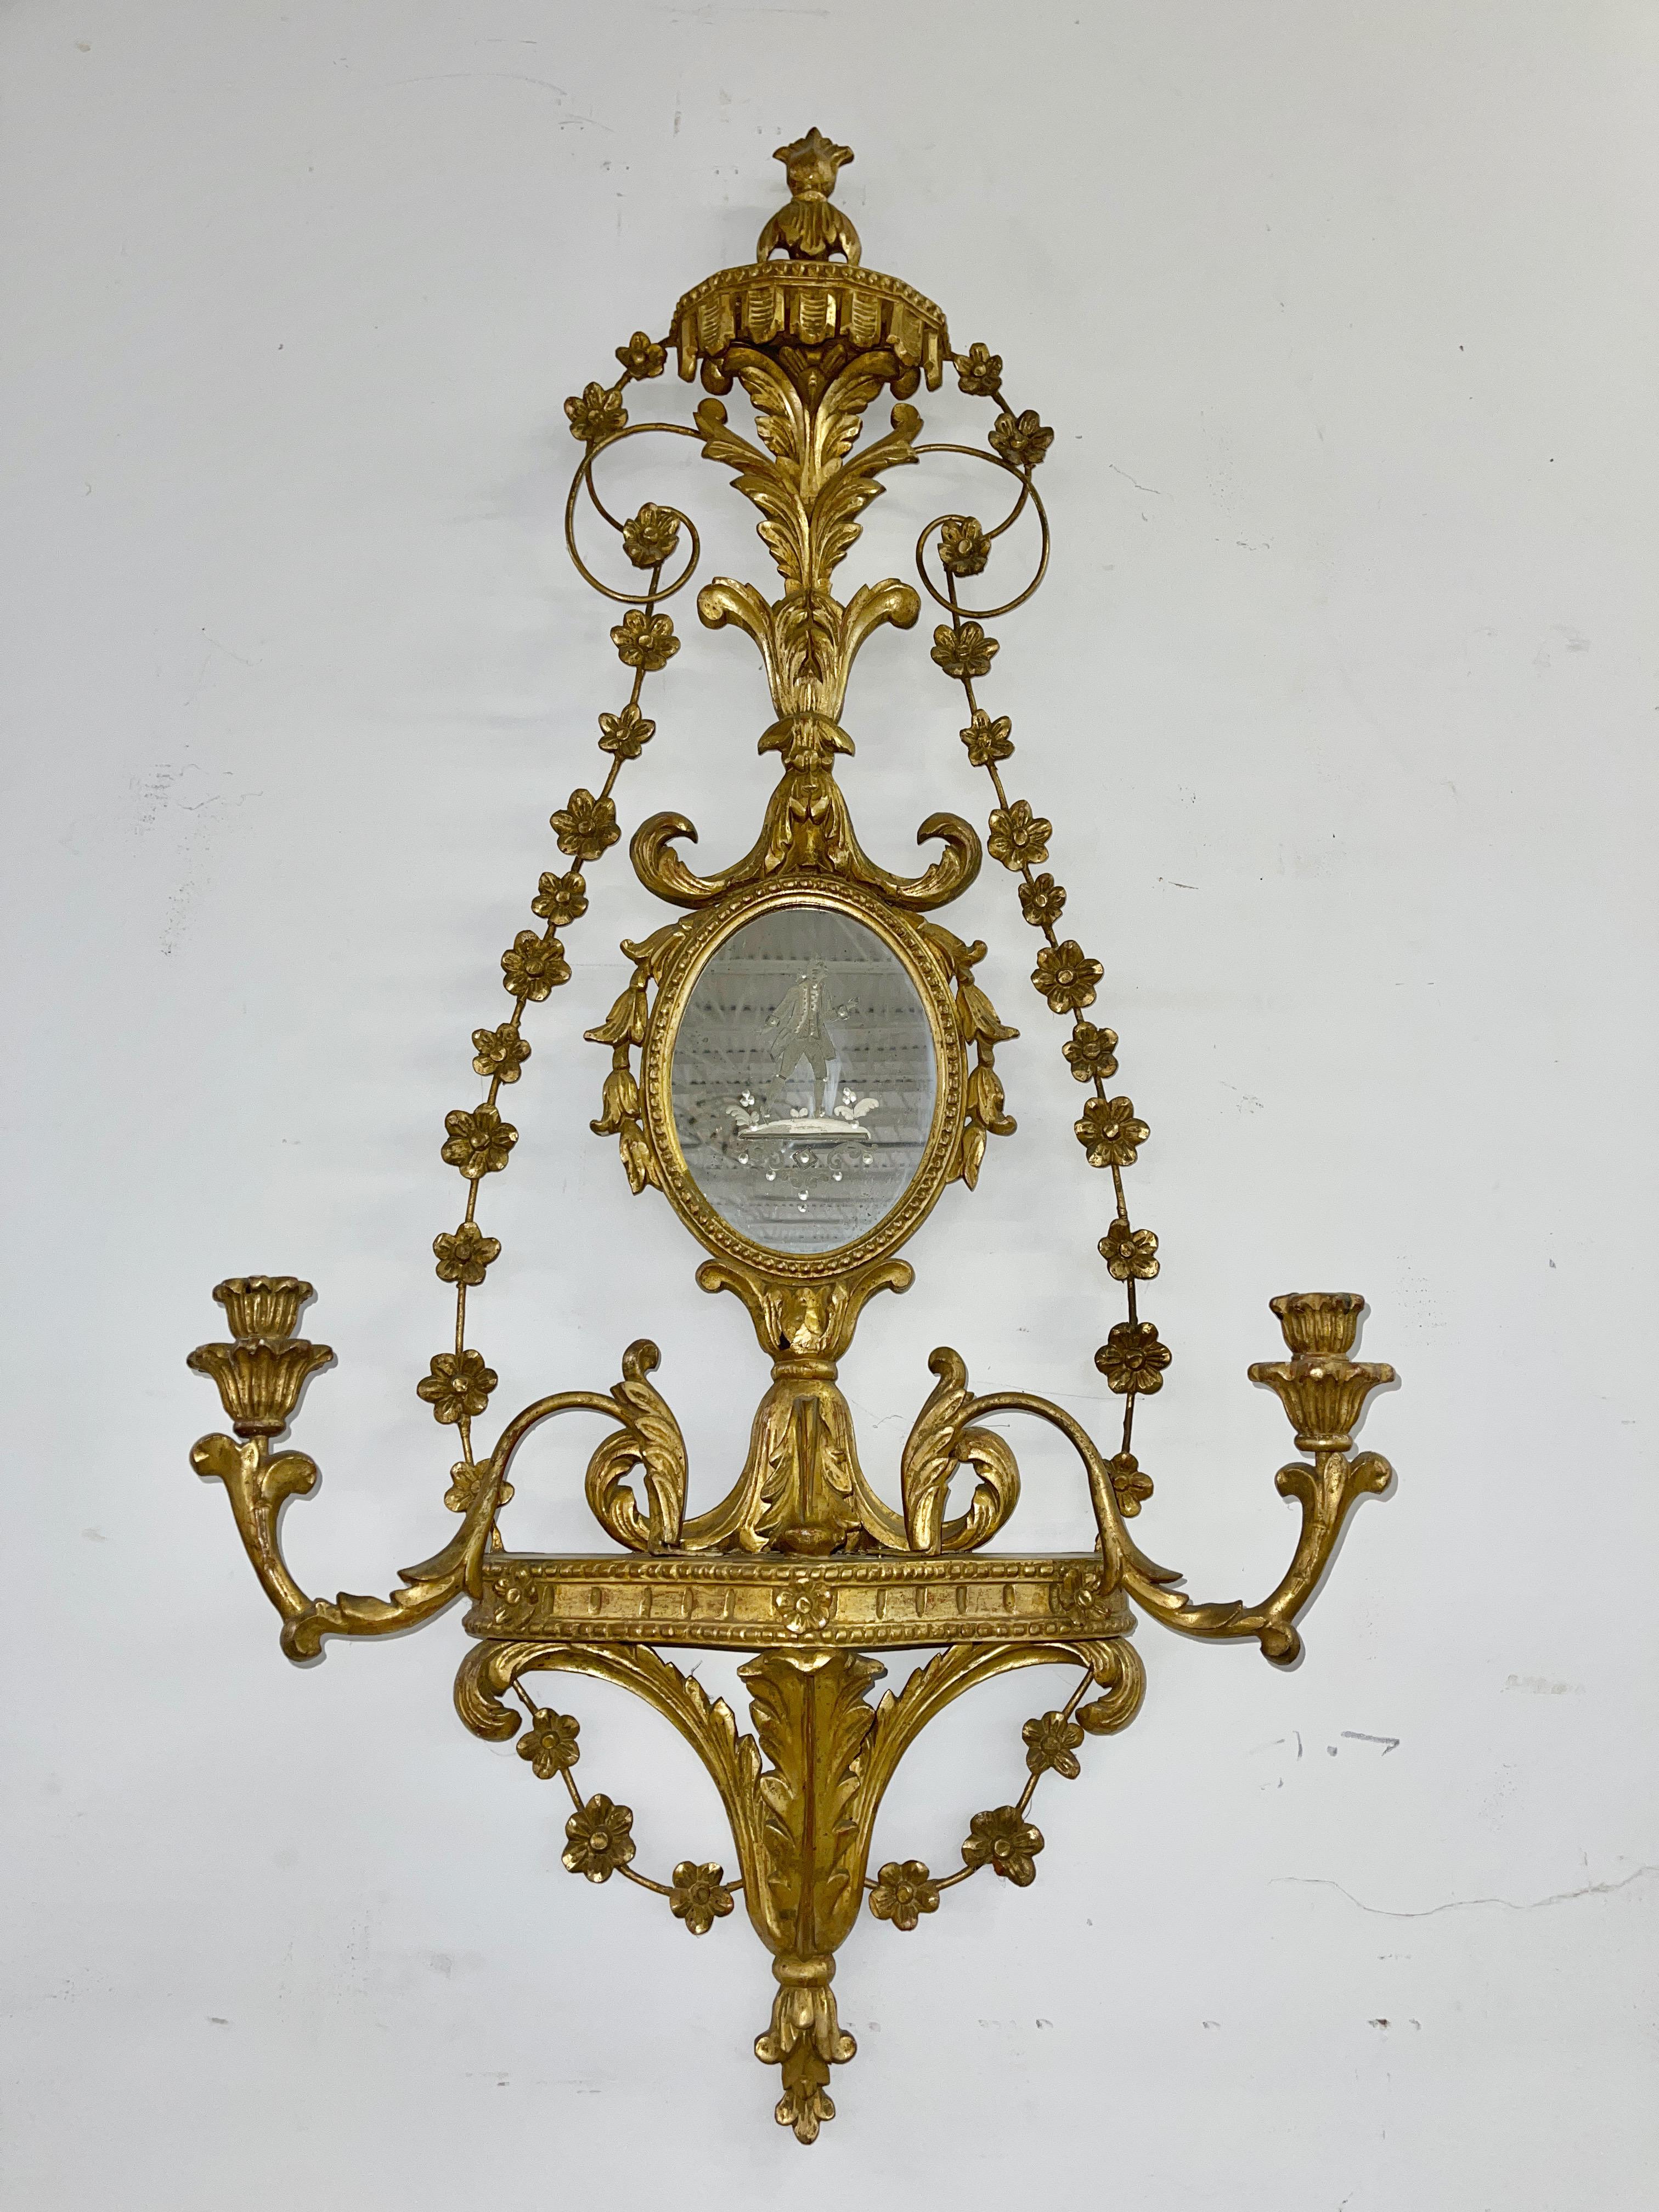 Des sculptures feuillues très élaborées sur ces miroirs girondoles italiens en bois doré avec appliques à bougie. Miroirs gravés de figures vénitiennes, masculines et féminines.